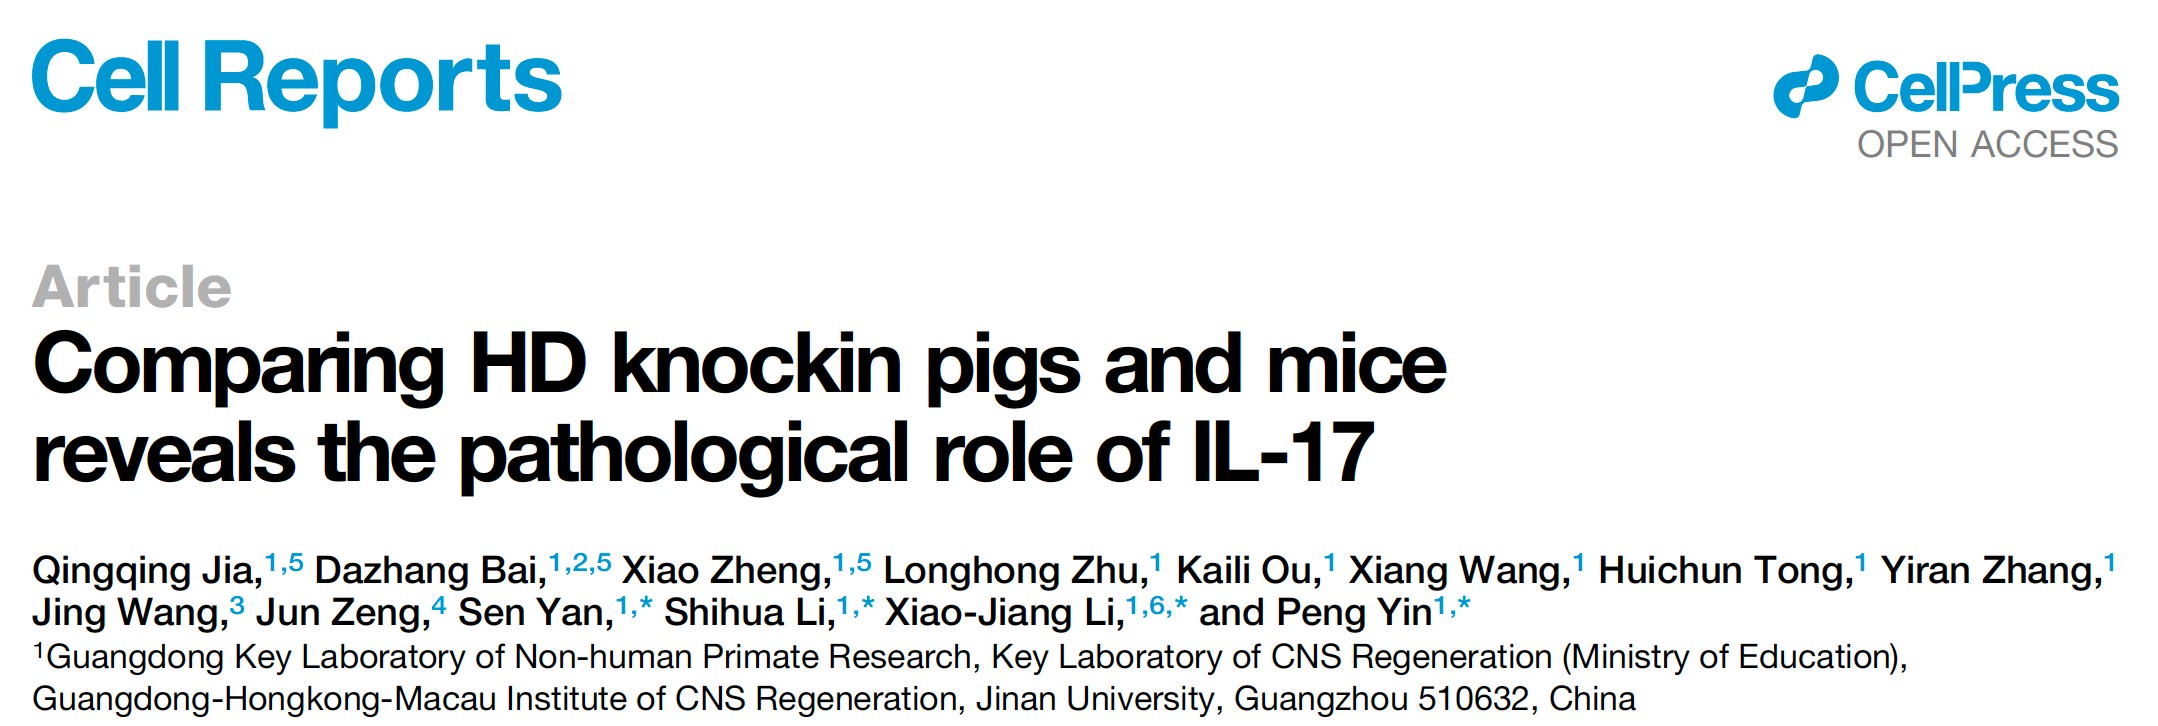 粤港澳中枢神经再生研究院李晓江团队发表Cell Reports论文：比较亨廷顿疾病基因敲入猪和小鼠模型揭示了新病理机制